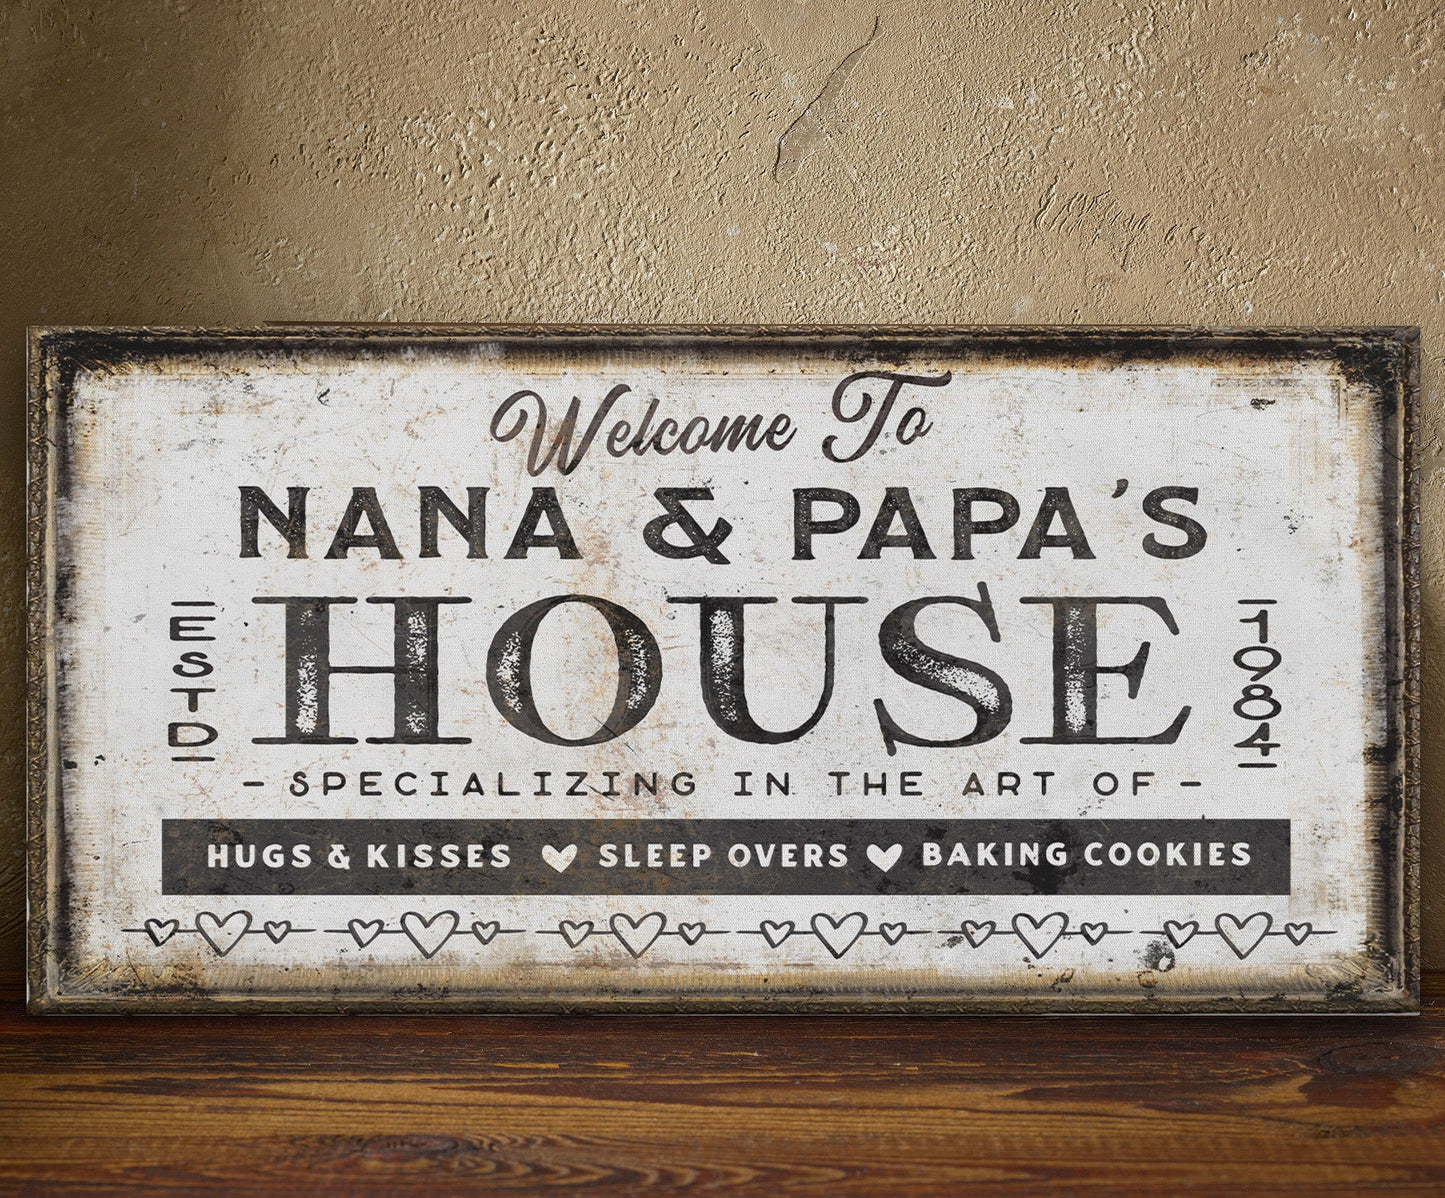 Grandma & Grandpa's House Canvas Sign | Personalizable Grandparent Gift